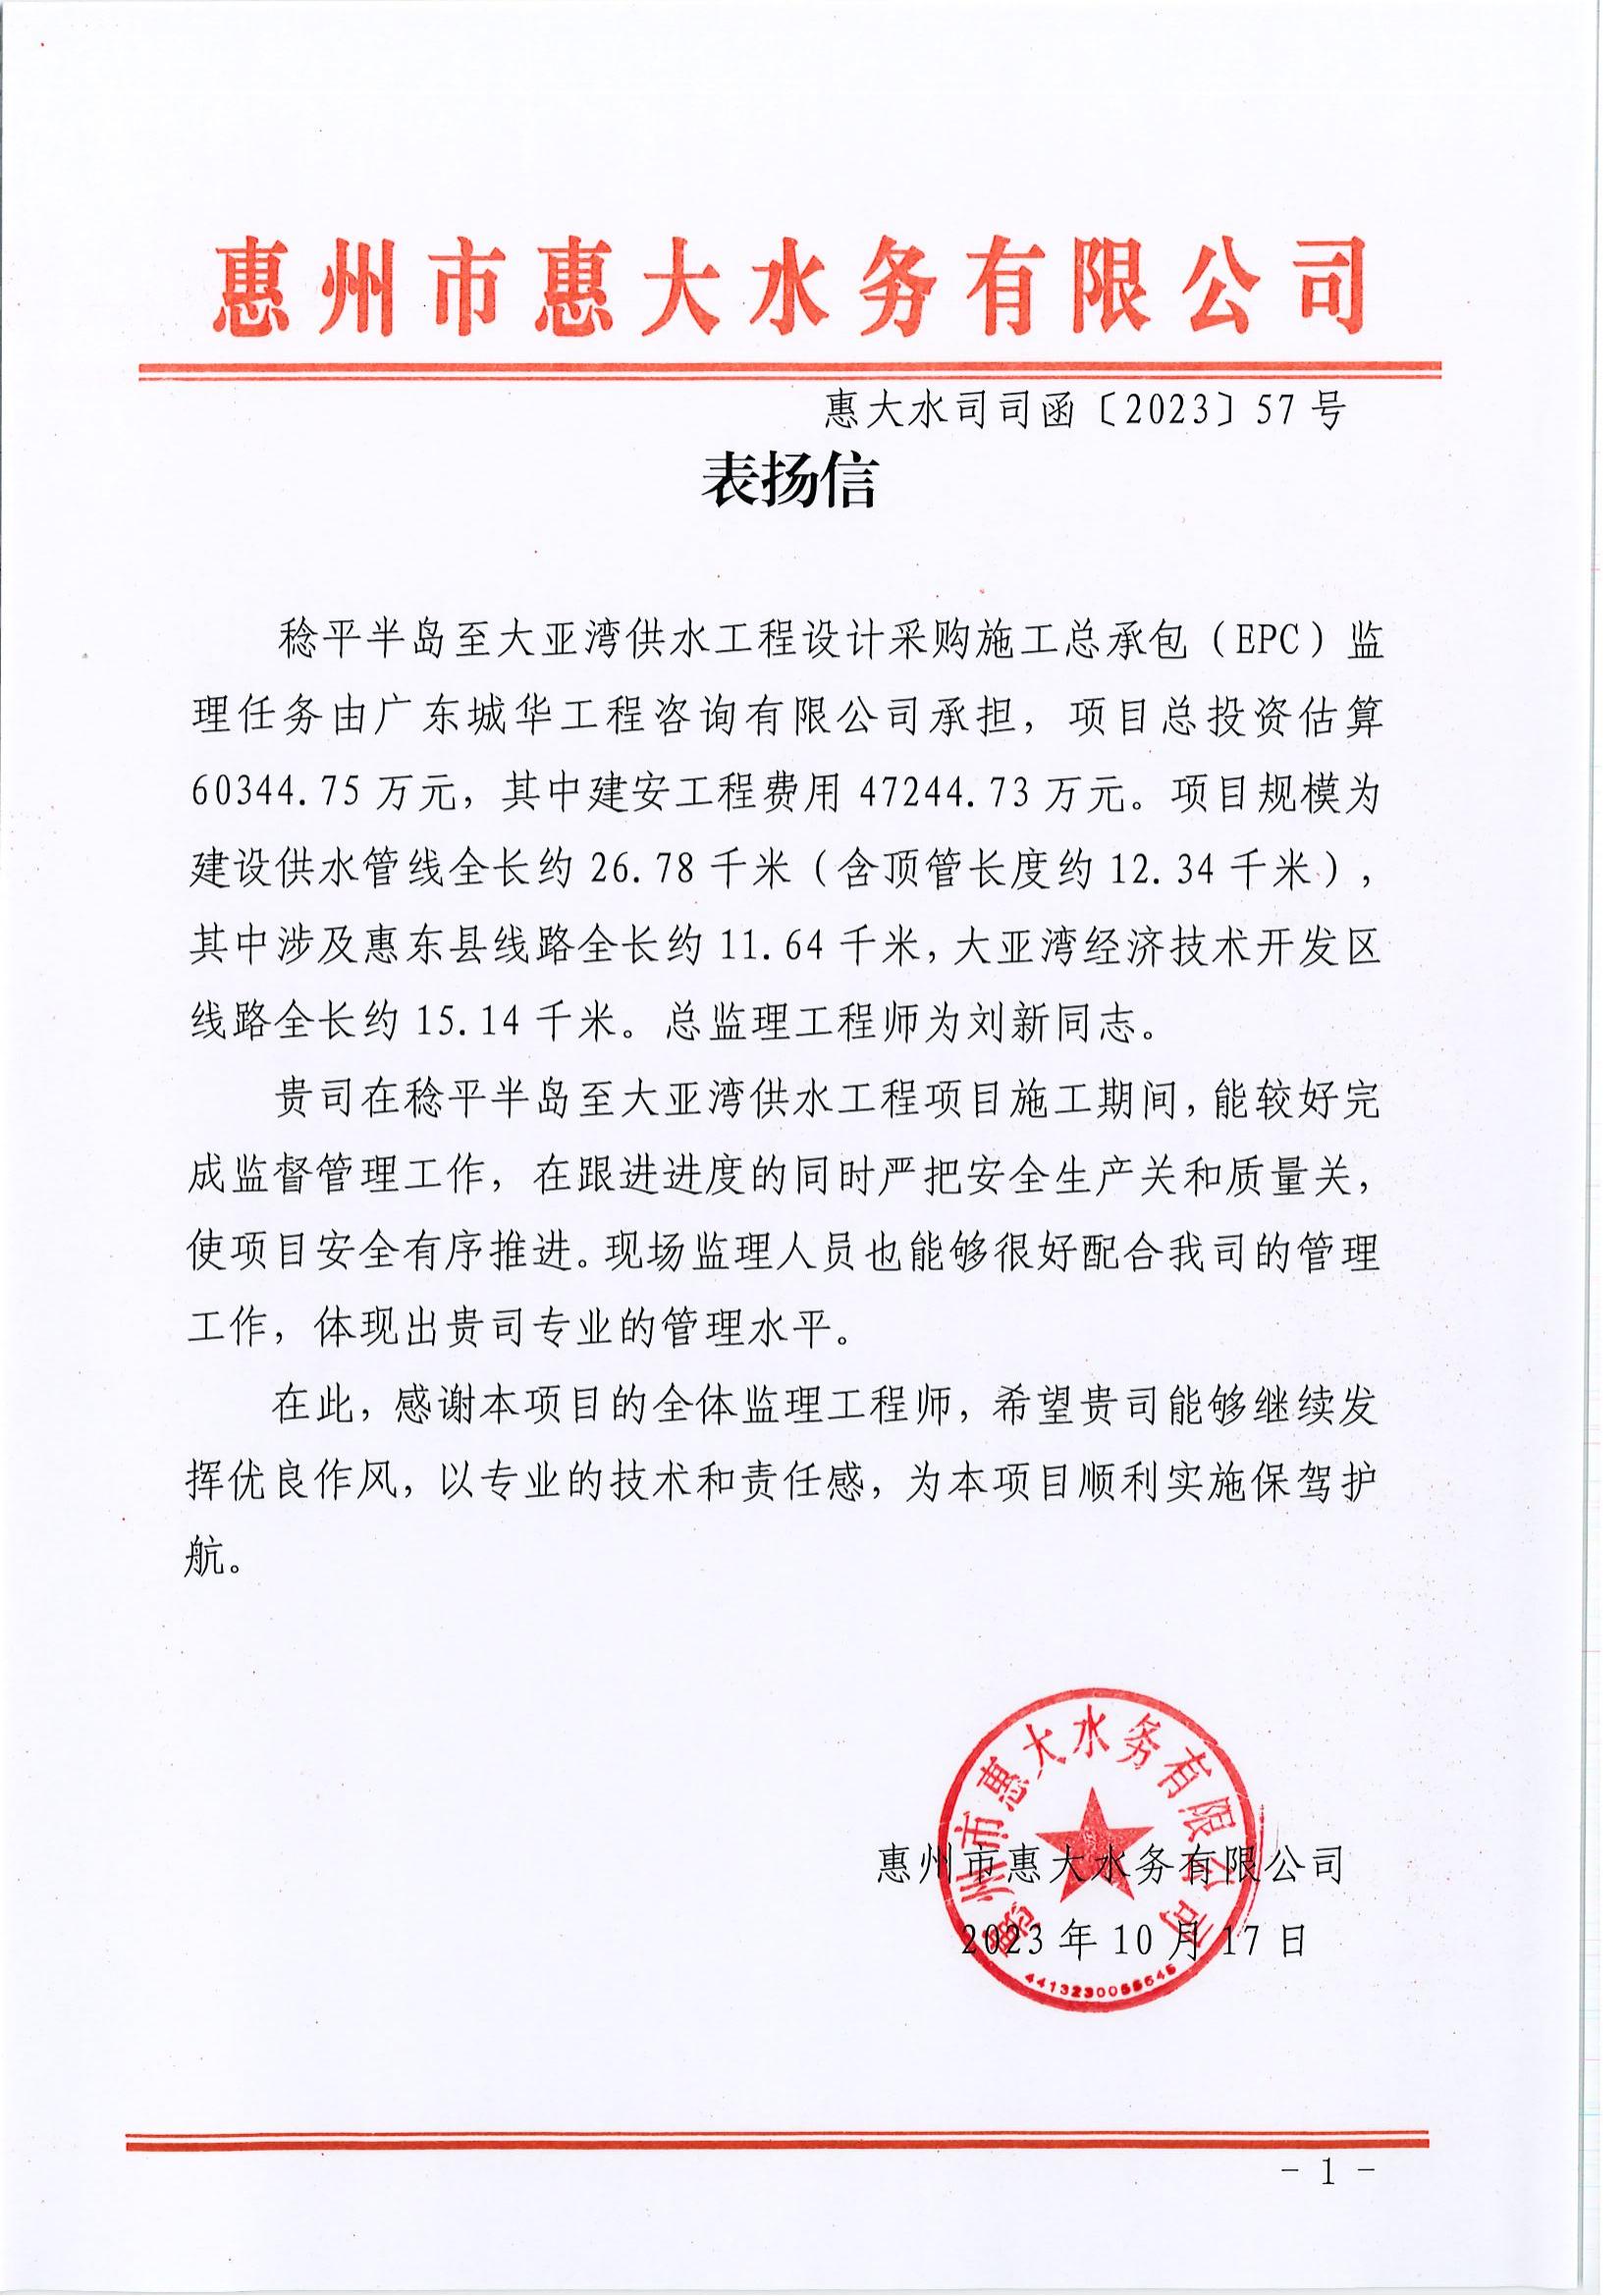 惠州市惠大水务有限公司发来一封表扬信.jpg